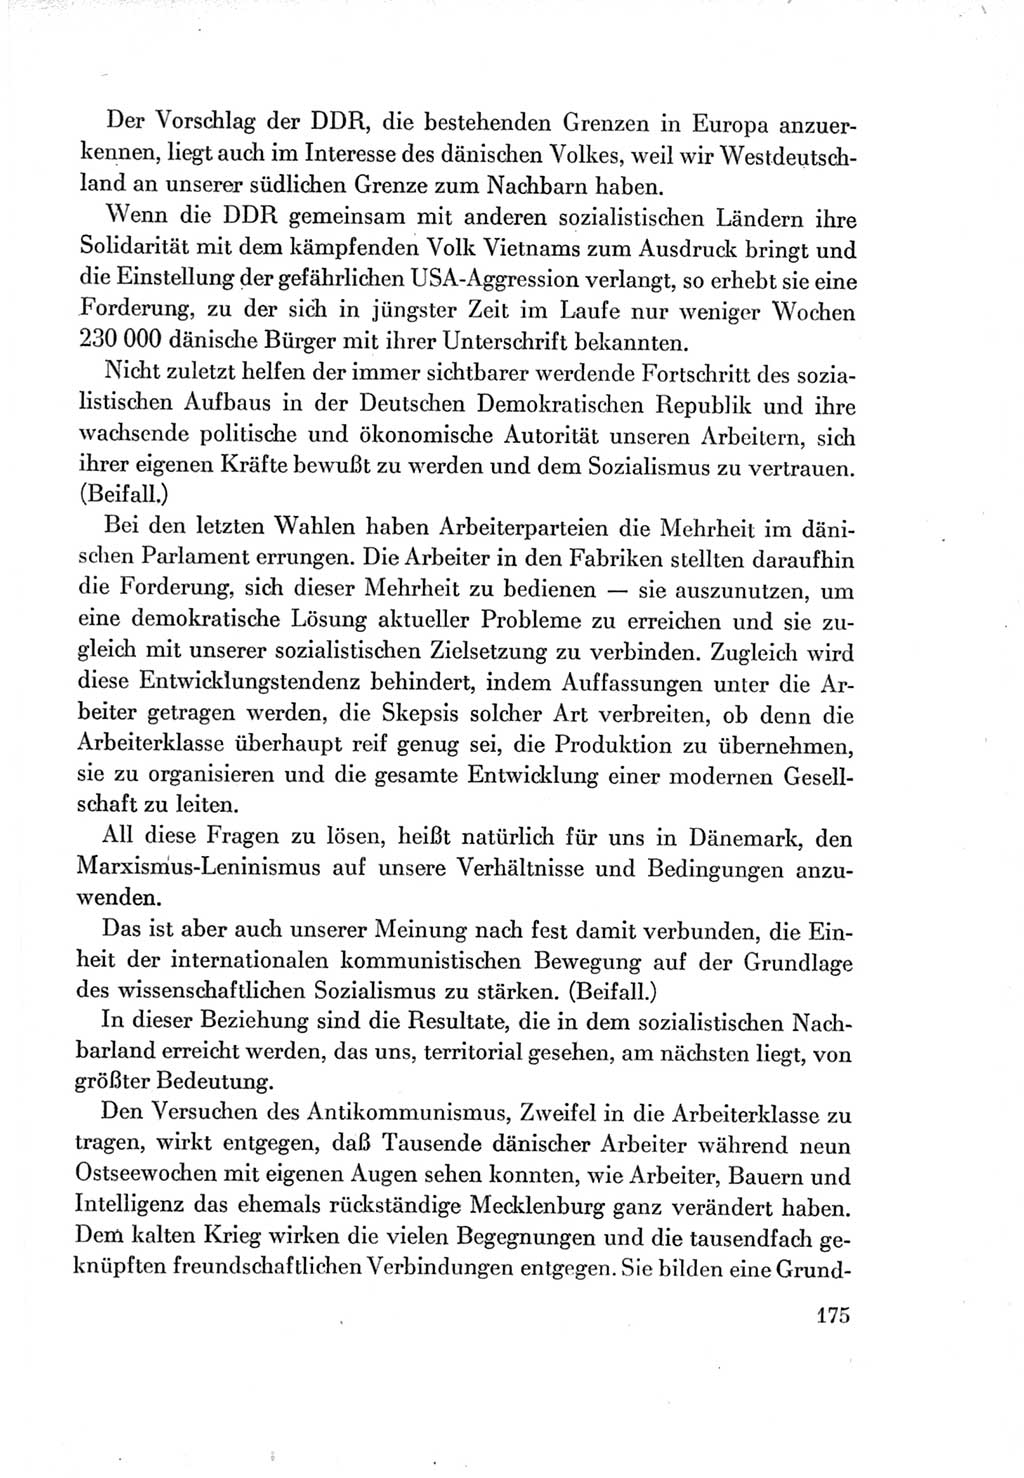 Protokoll der Verhandlungen des Ⅶ. Parteitages der Sozialistischen Einheitspartei Deutschlands (SED) [Deutsche Demokratische Republik (DDR)] 1967, Band Ⅱ, Seite 175 (Prot. Verh. Ⅶ. PT SED DDR 1967, Bd. Ⅱ, S. 175)